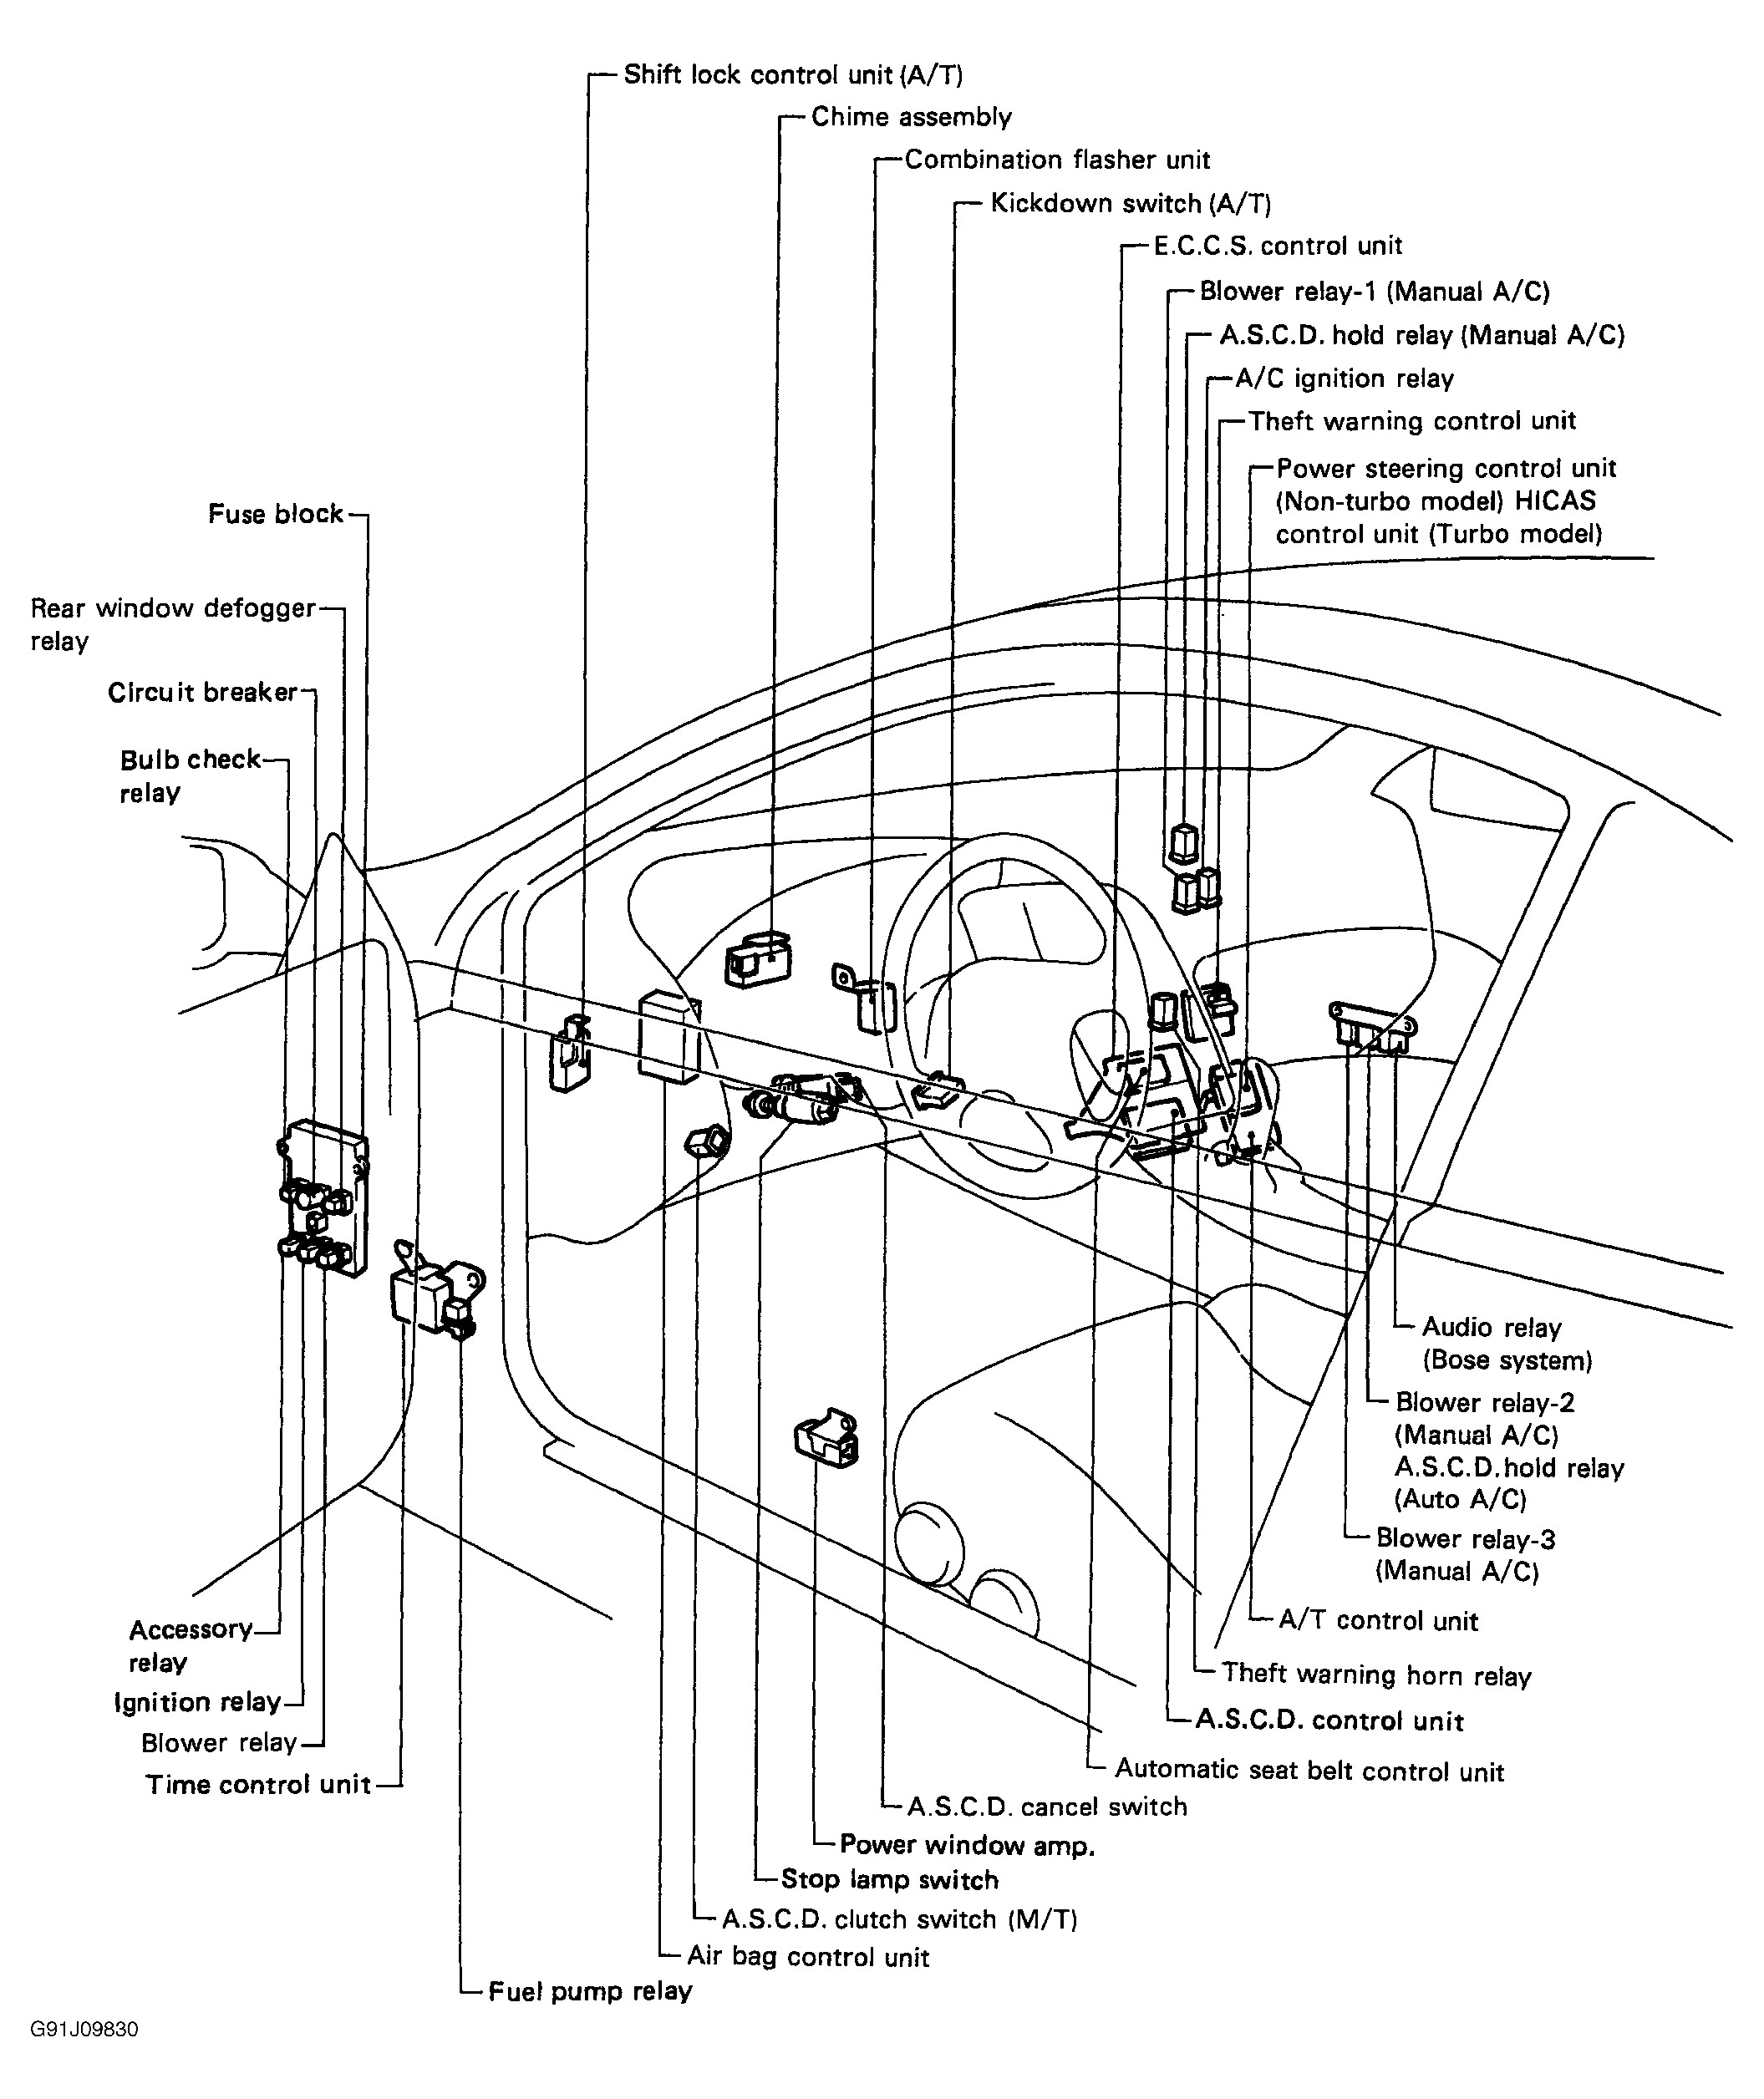 Nissan Sentra Wiring Diagram from detoxicrecenze.com